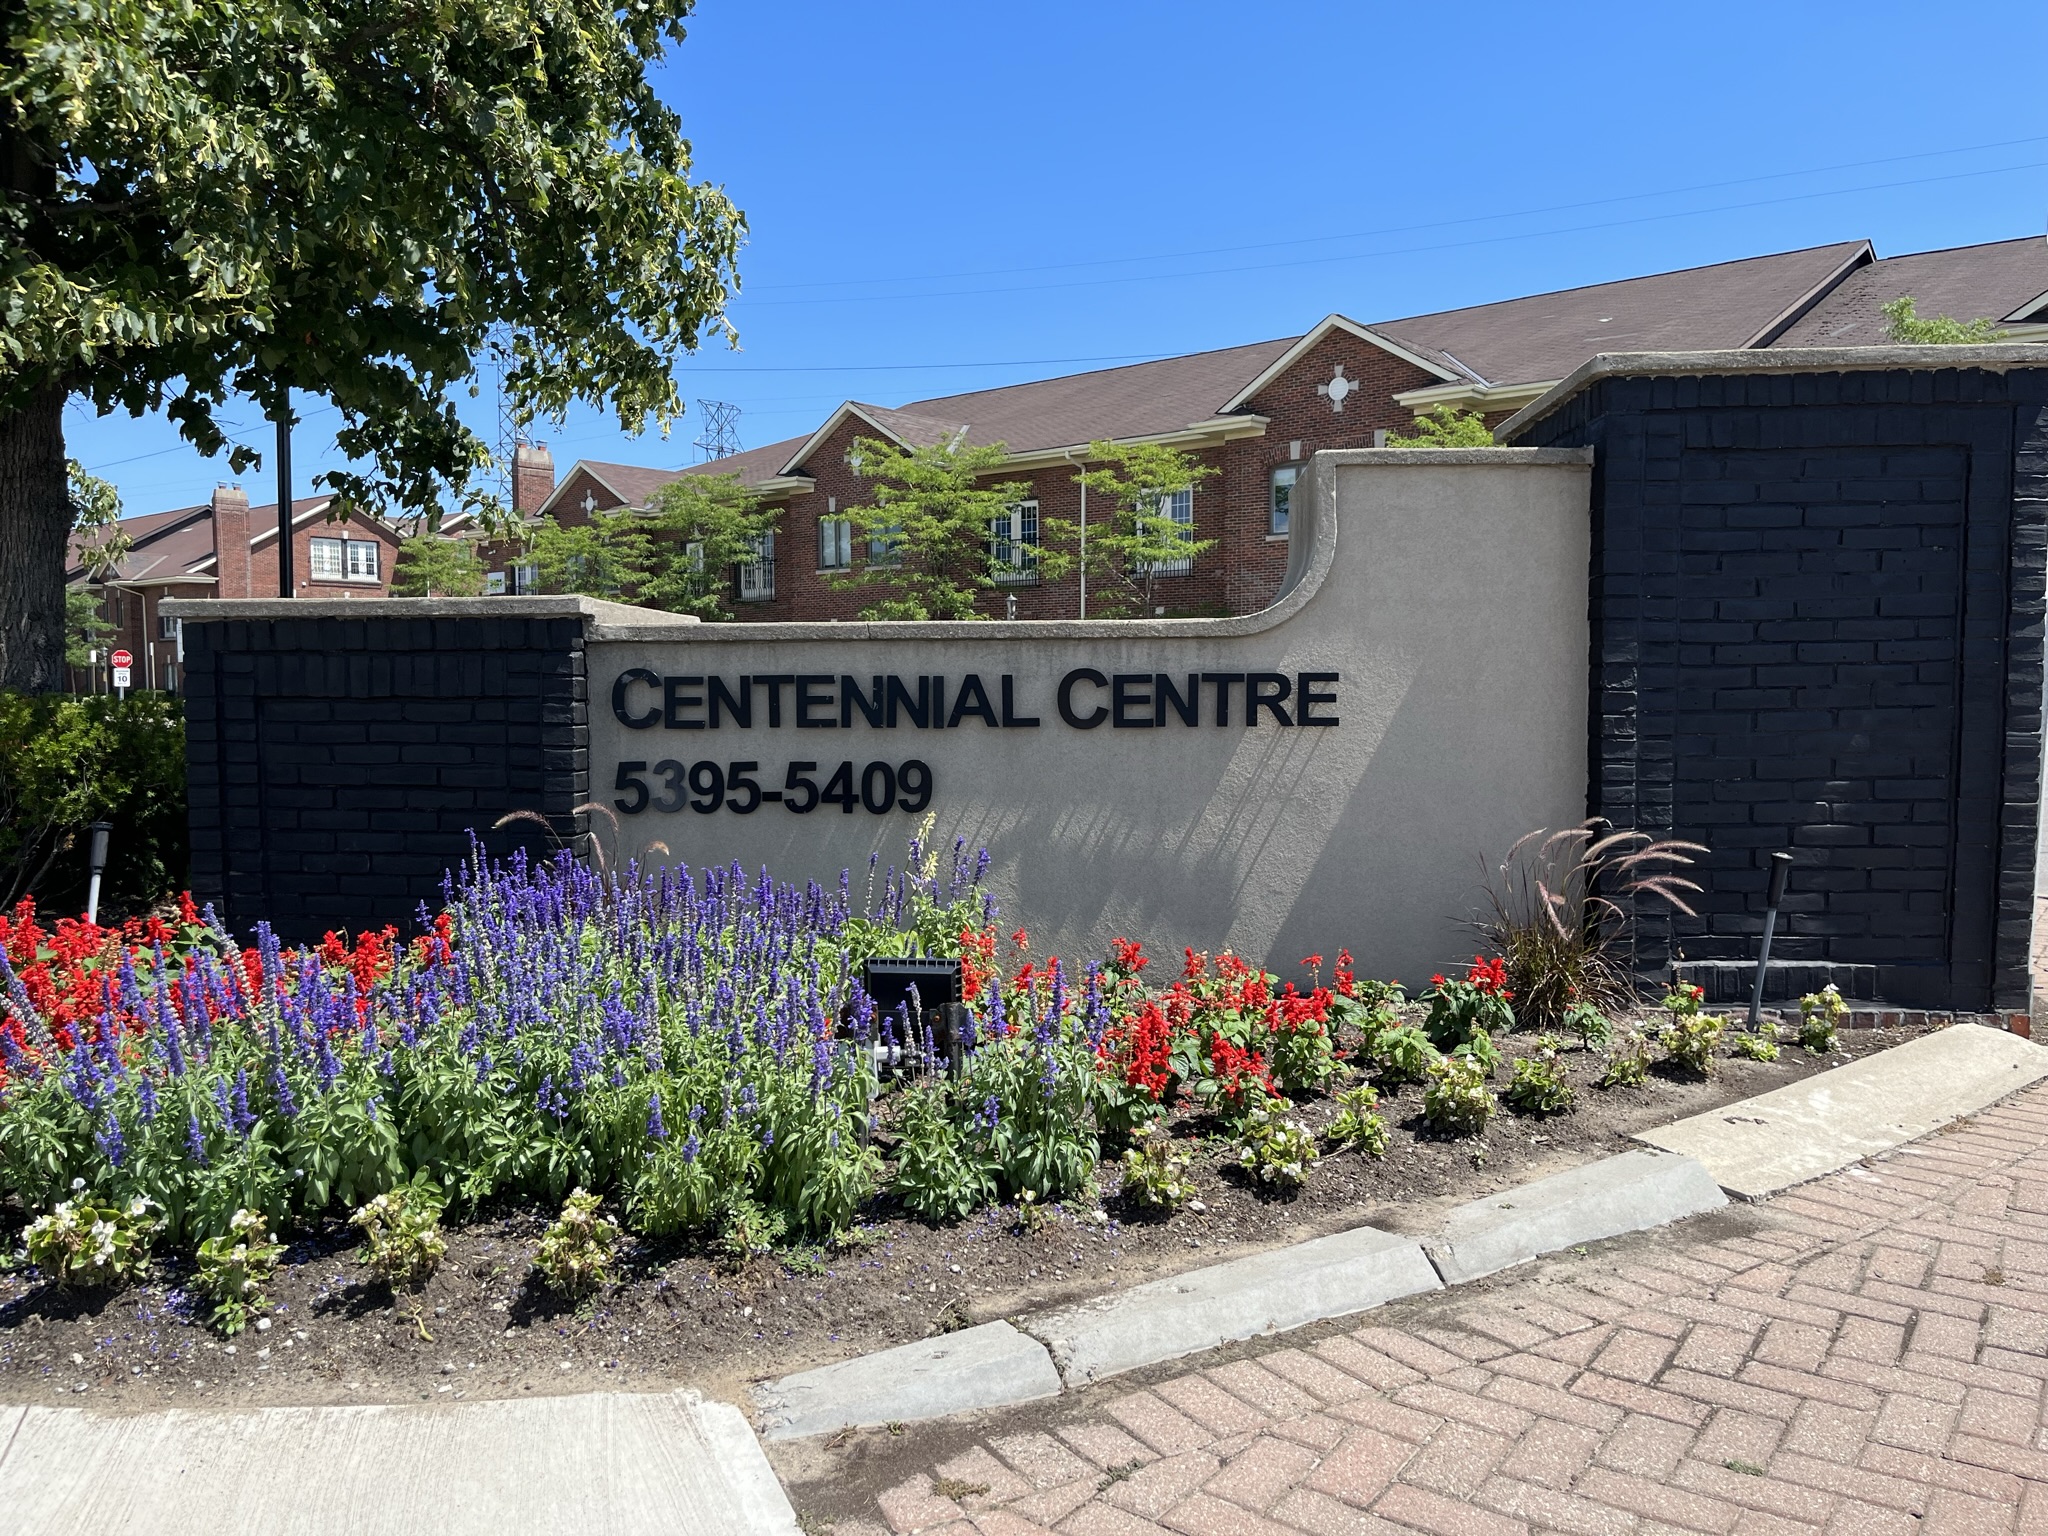 Centennial Centre